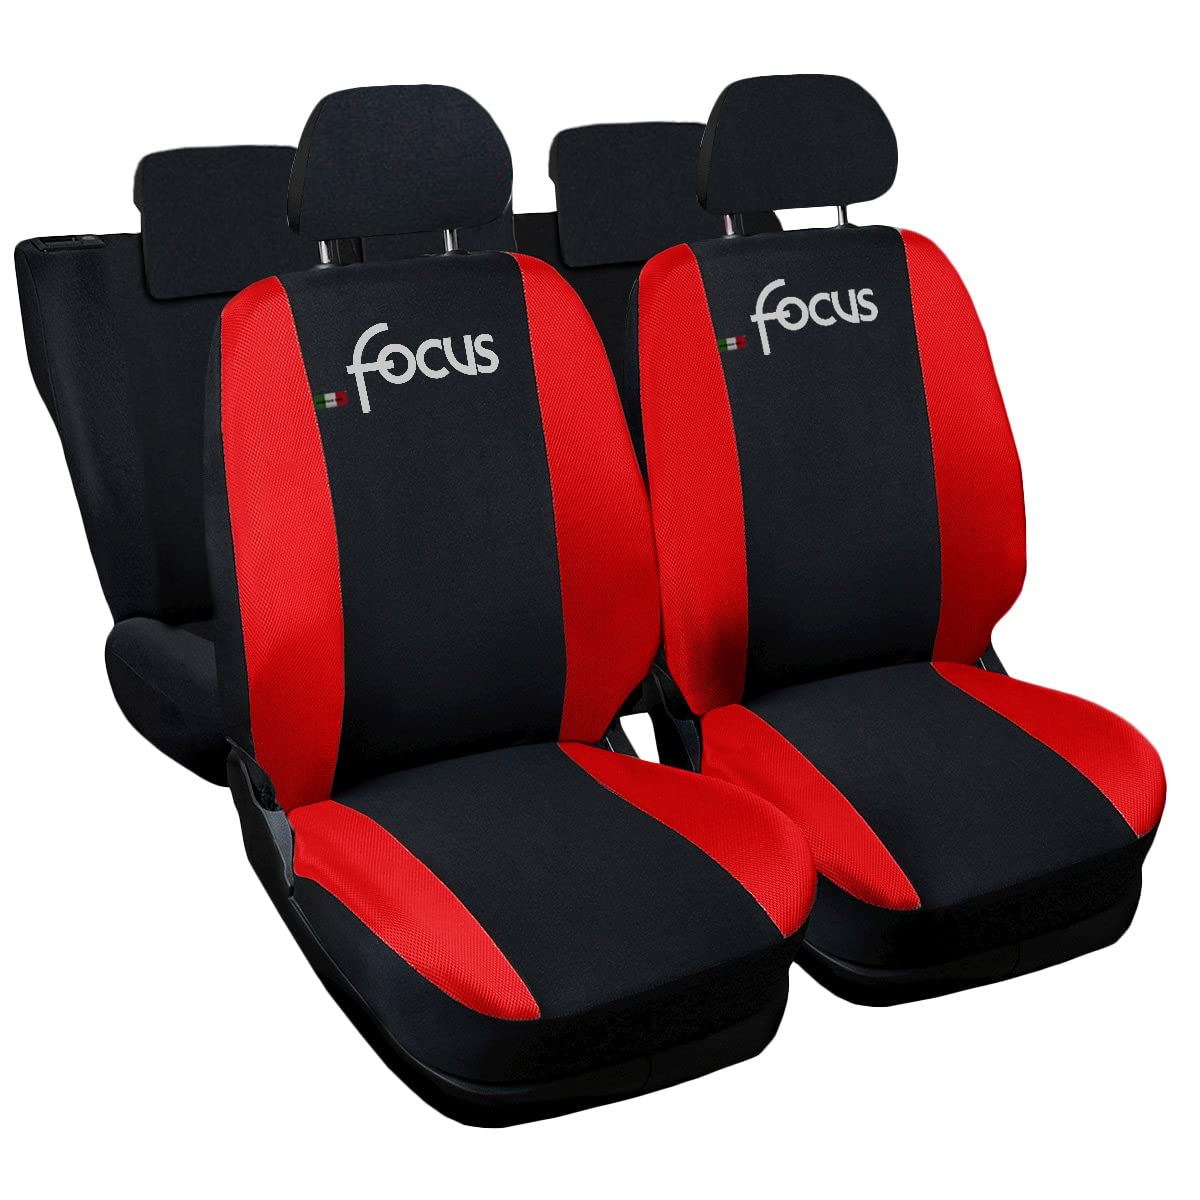 Auto Accessori Lupex - Sitzbezüge für Autositz, kompatibel Autositzbezüge für Focus, schwarz rot, Made in Italy, Set Sitzbezüge für Vorder- und Rücksitze, Polyester-Gewebe, Auto-Innenbezüge von Auto Accessori Lupex